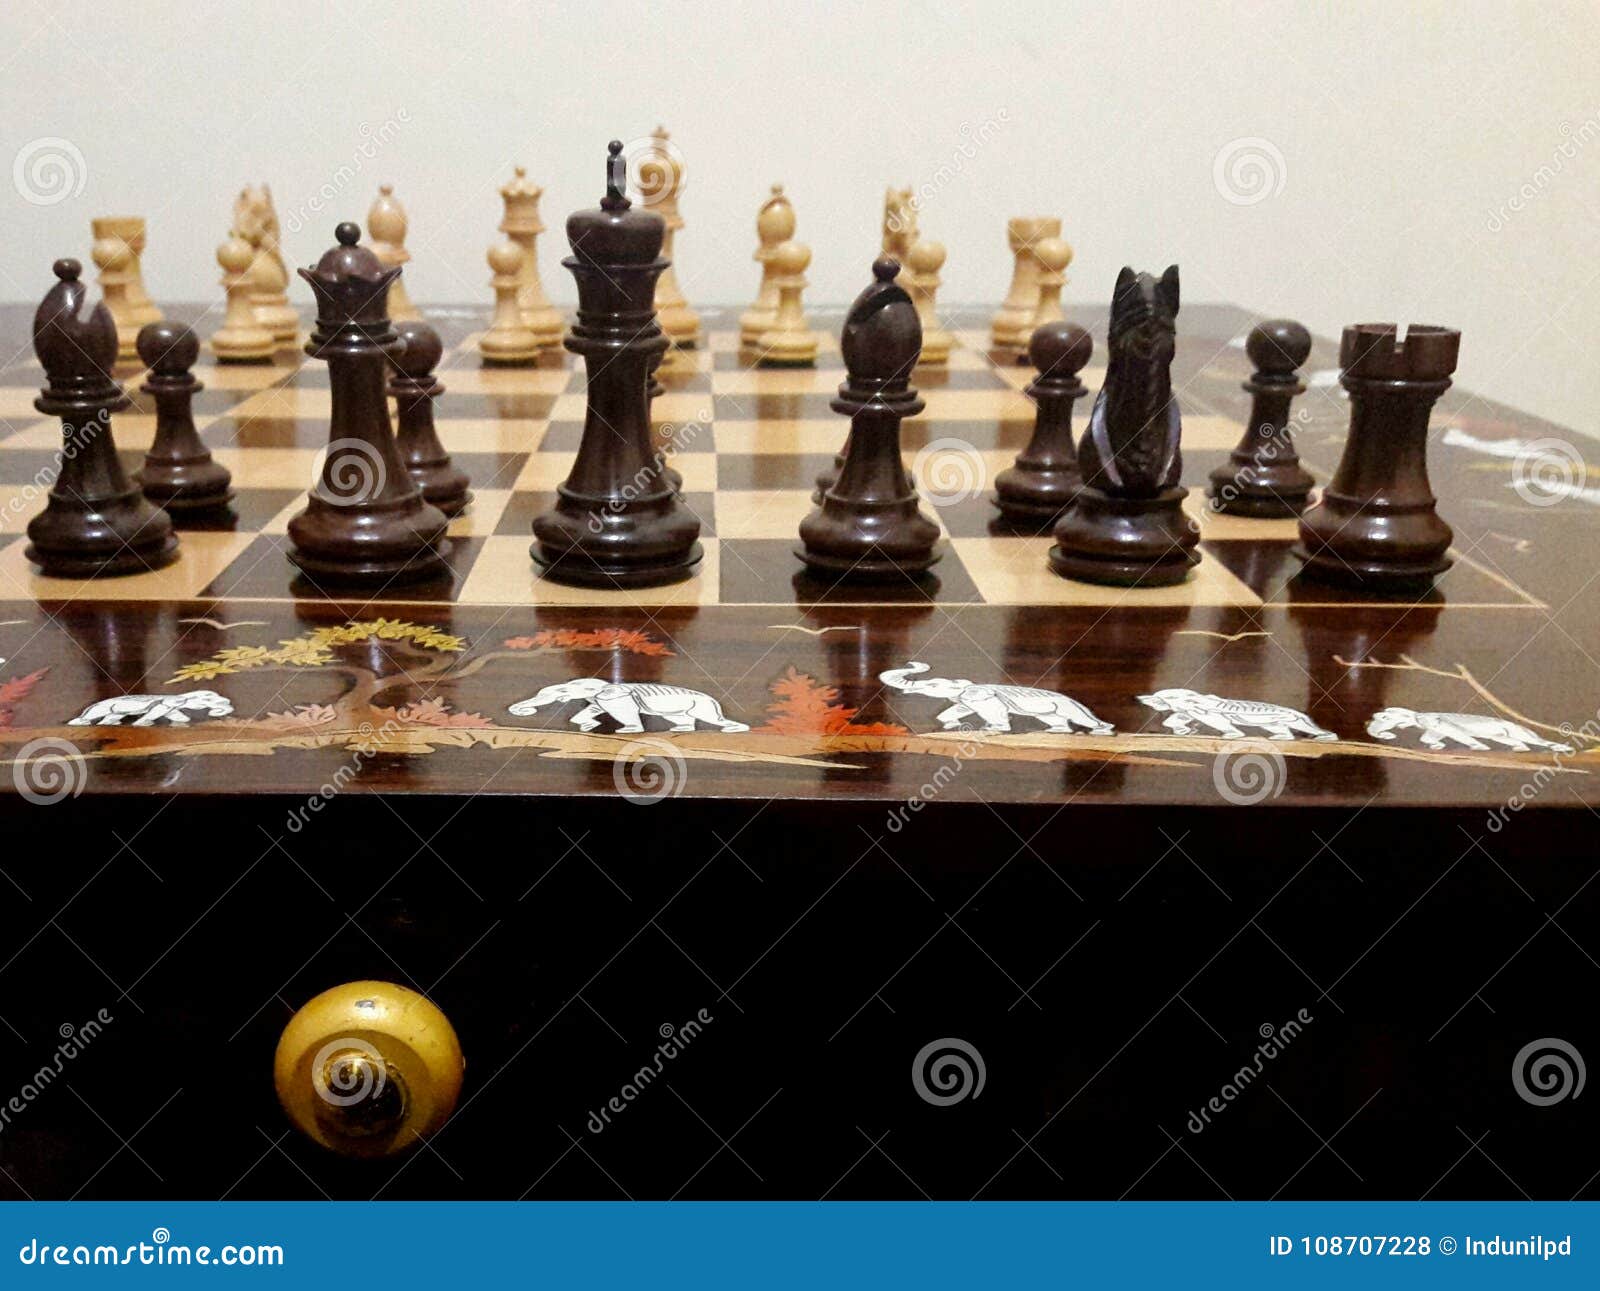 Vul in Professor Handvest Mooie schaakstukken stock foto. Image of besluit, achtergrond - 108707228